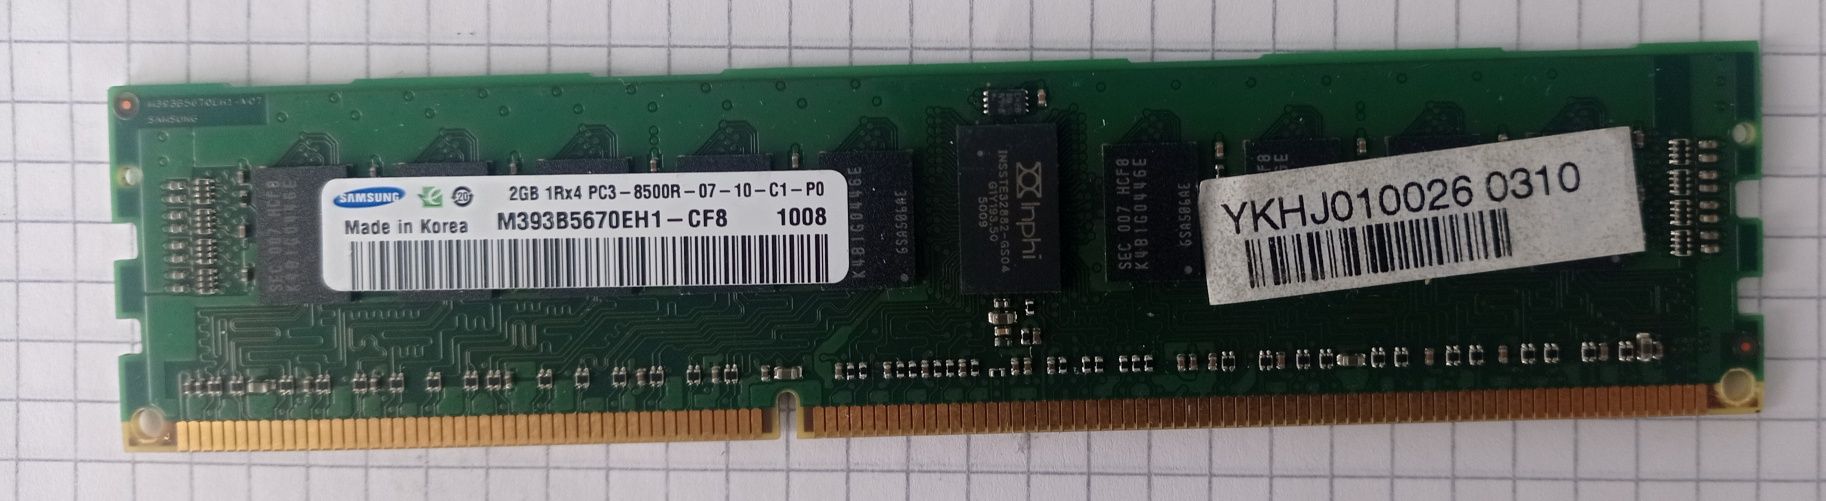 Модуль памяти DDR3 RDIMm 2Gb Samsung (M393B5670EH1-CF8)
Модуль памяти